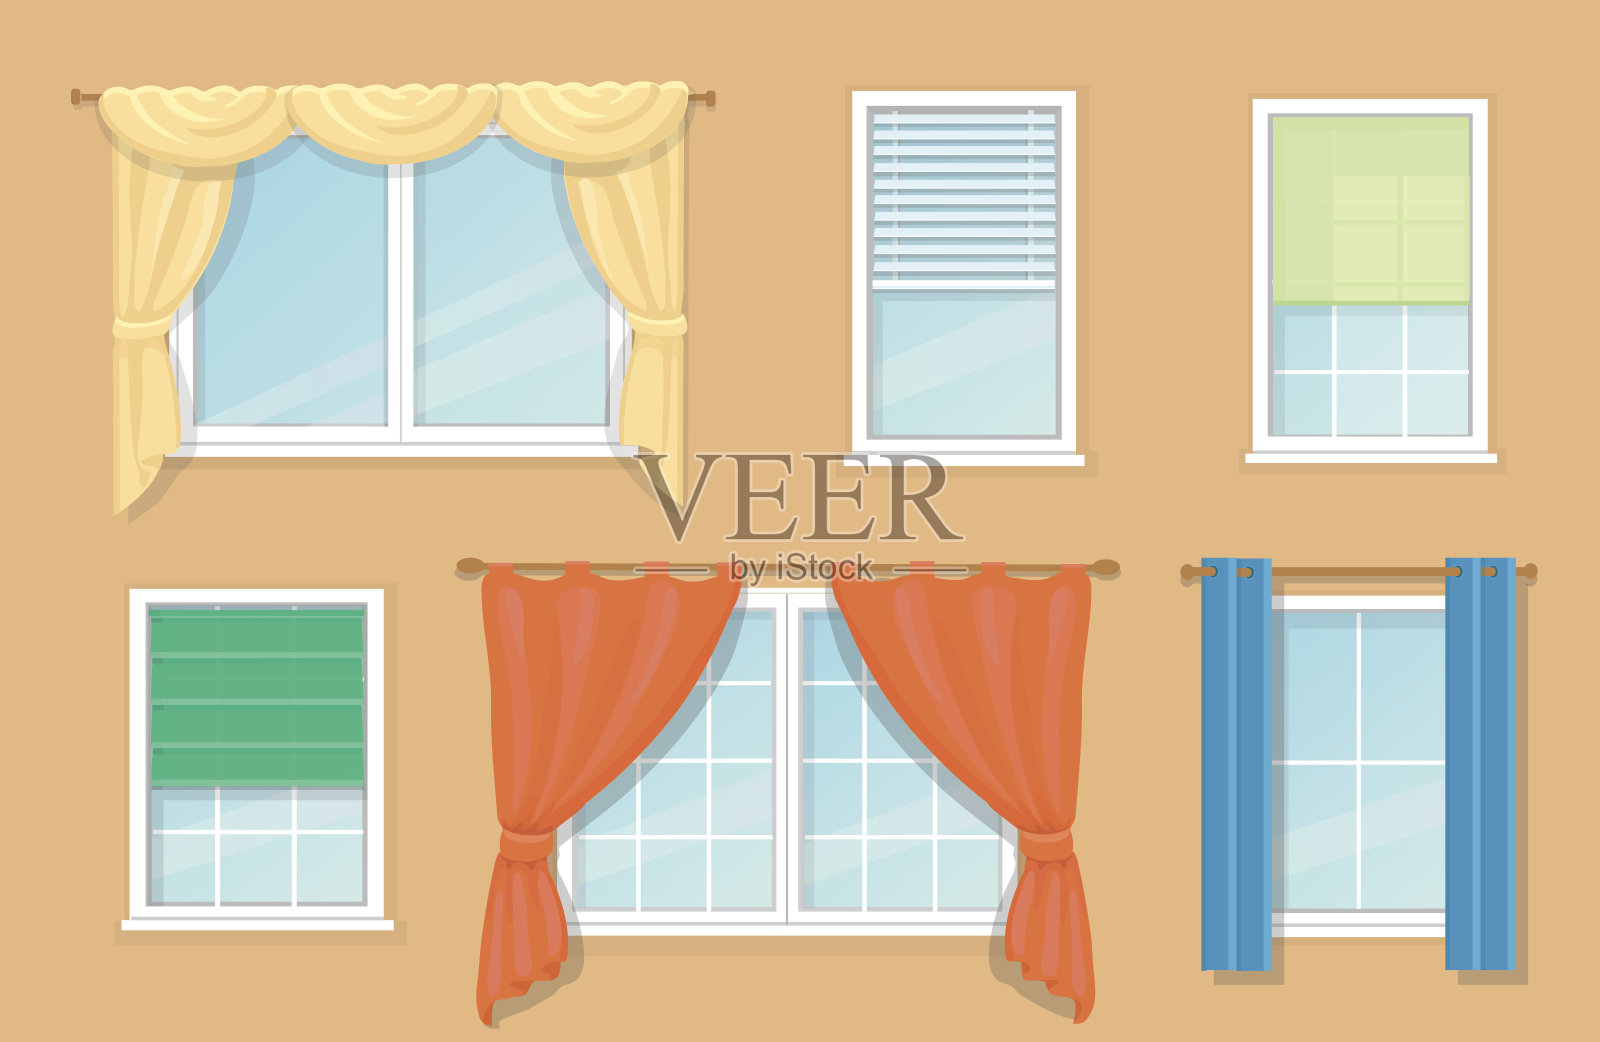 设计选项和类型的窗户窗帘插画图片素材